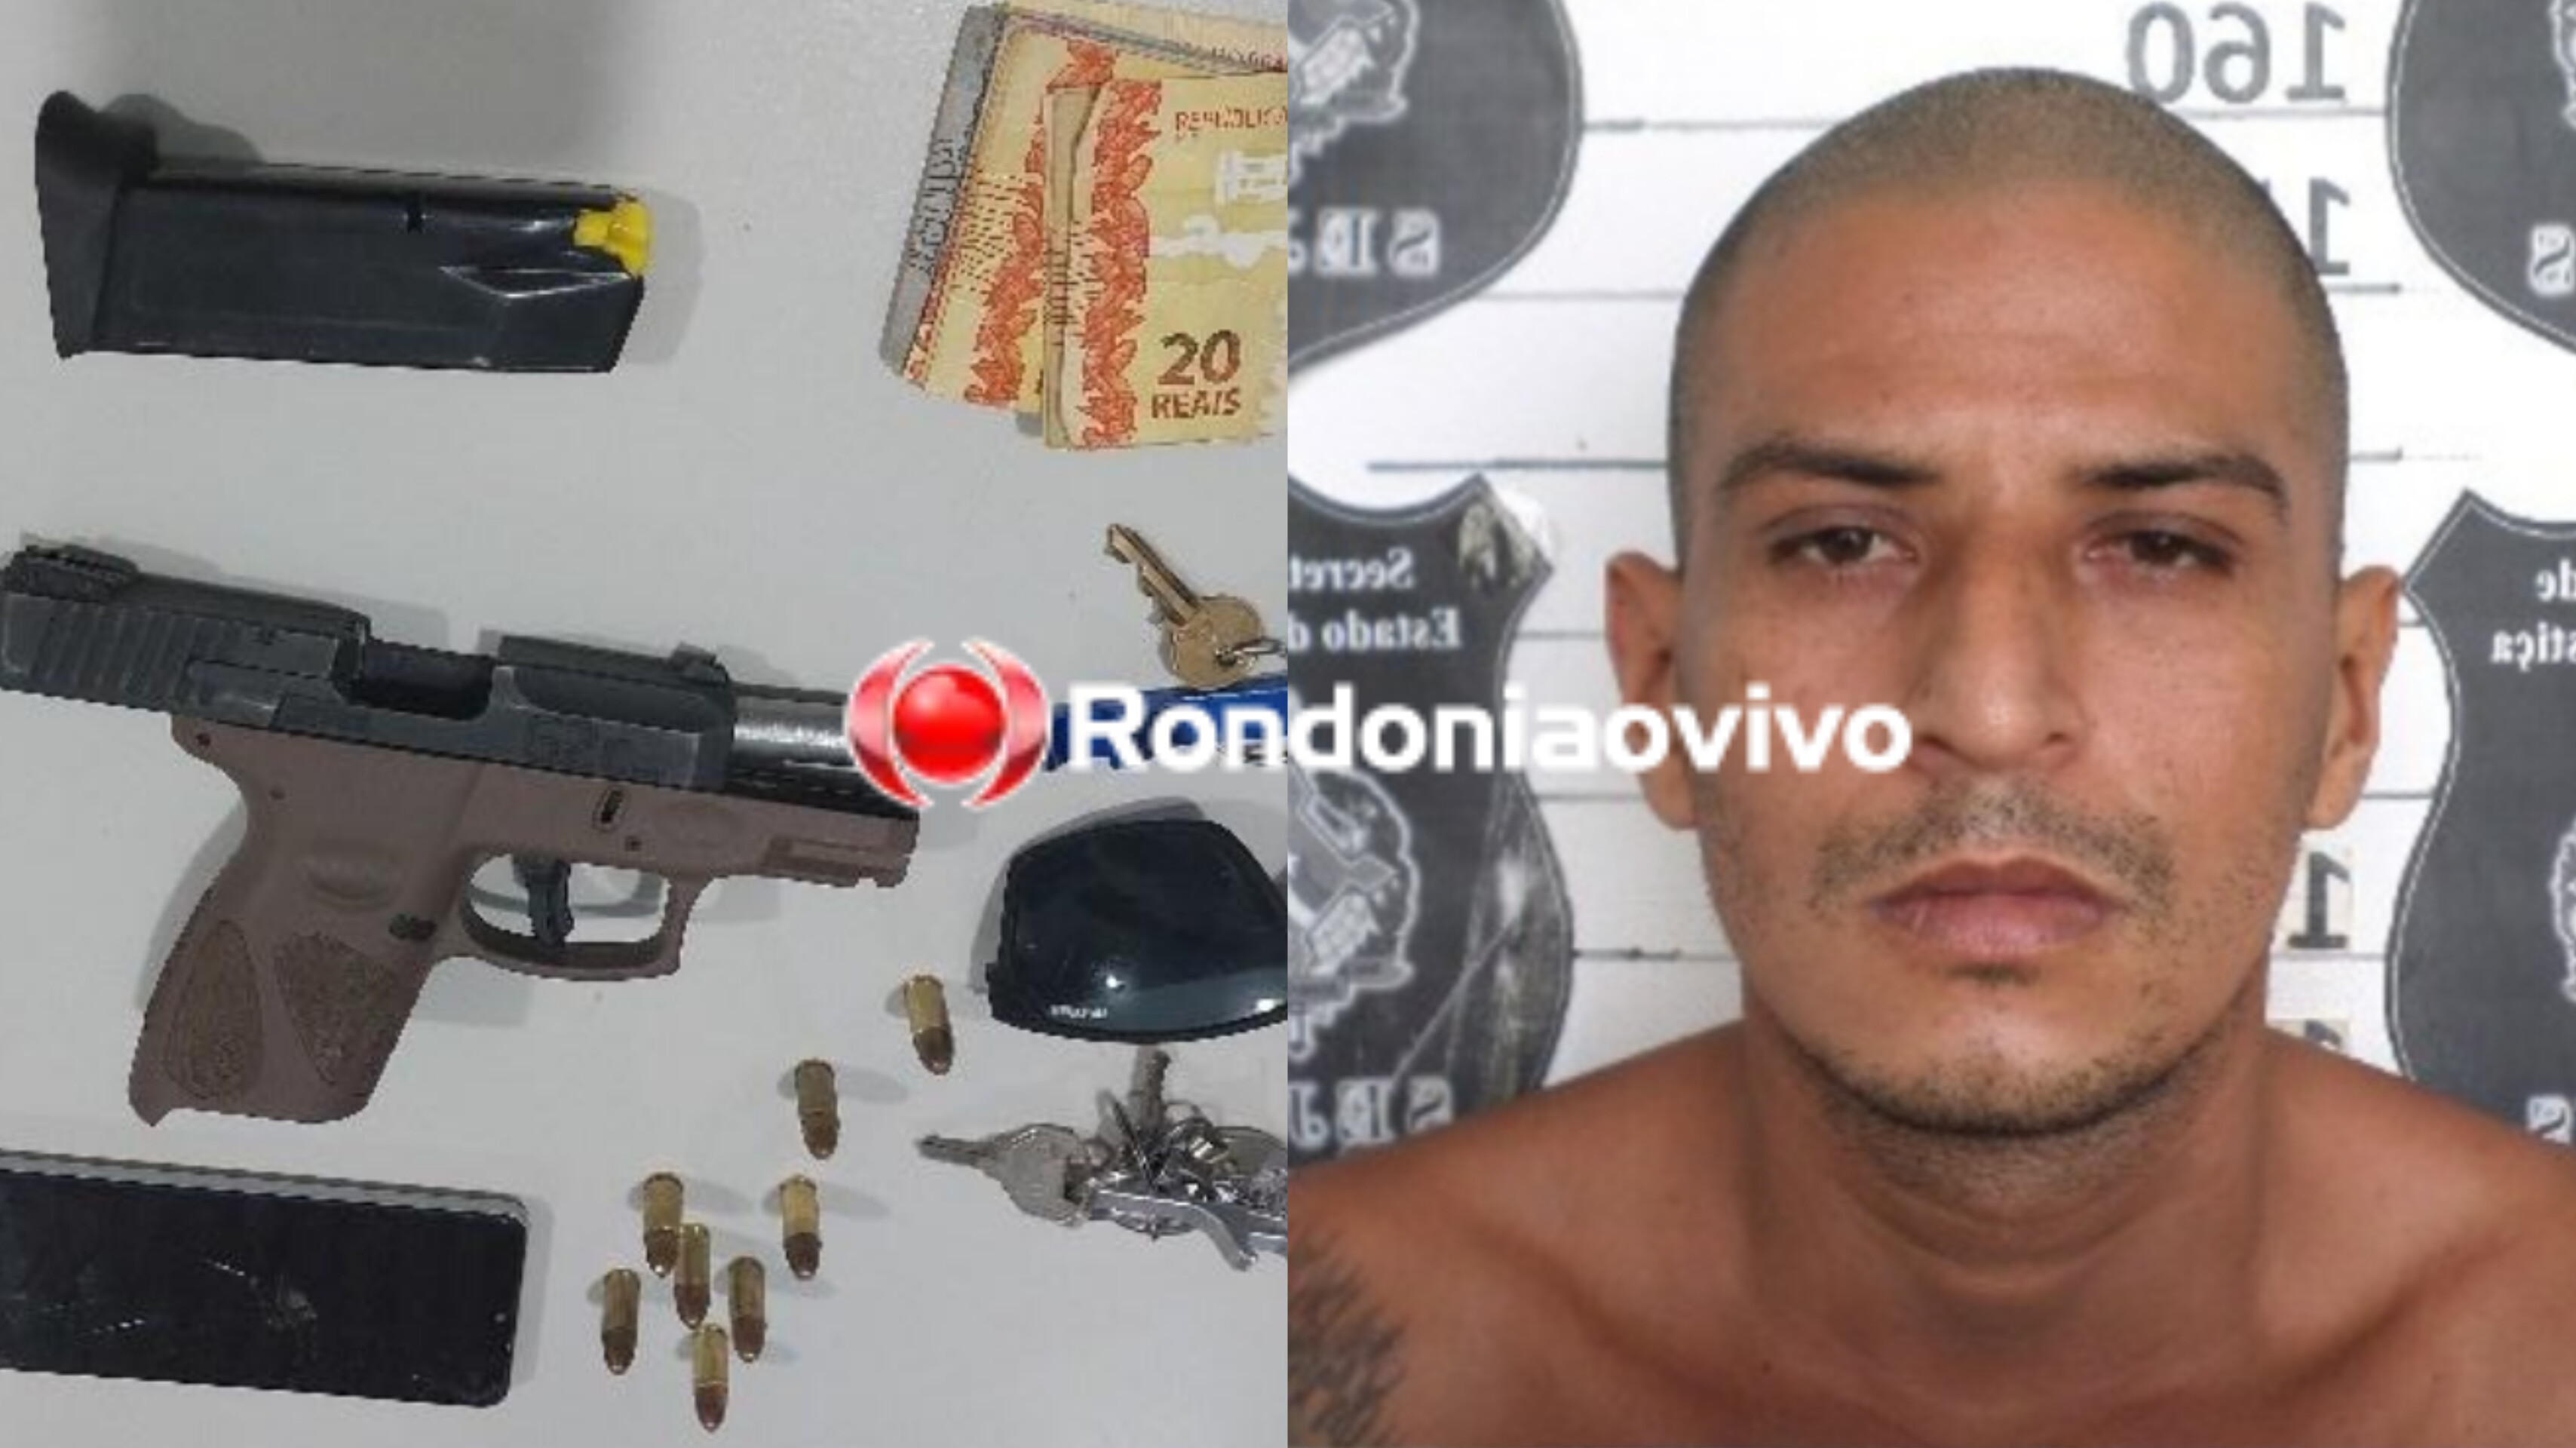 BECO GRAVATAL: PM prende homem com pistola roubada em Porto Velho 